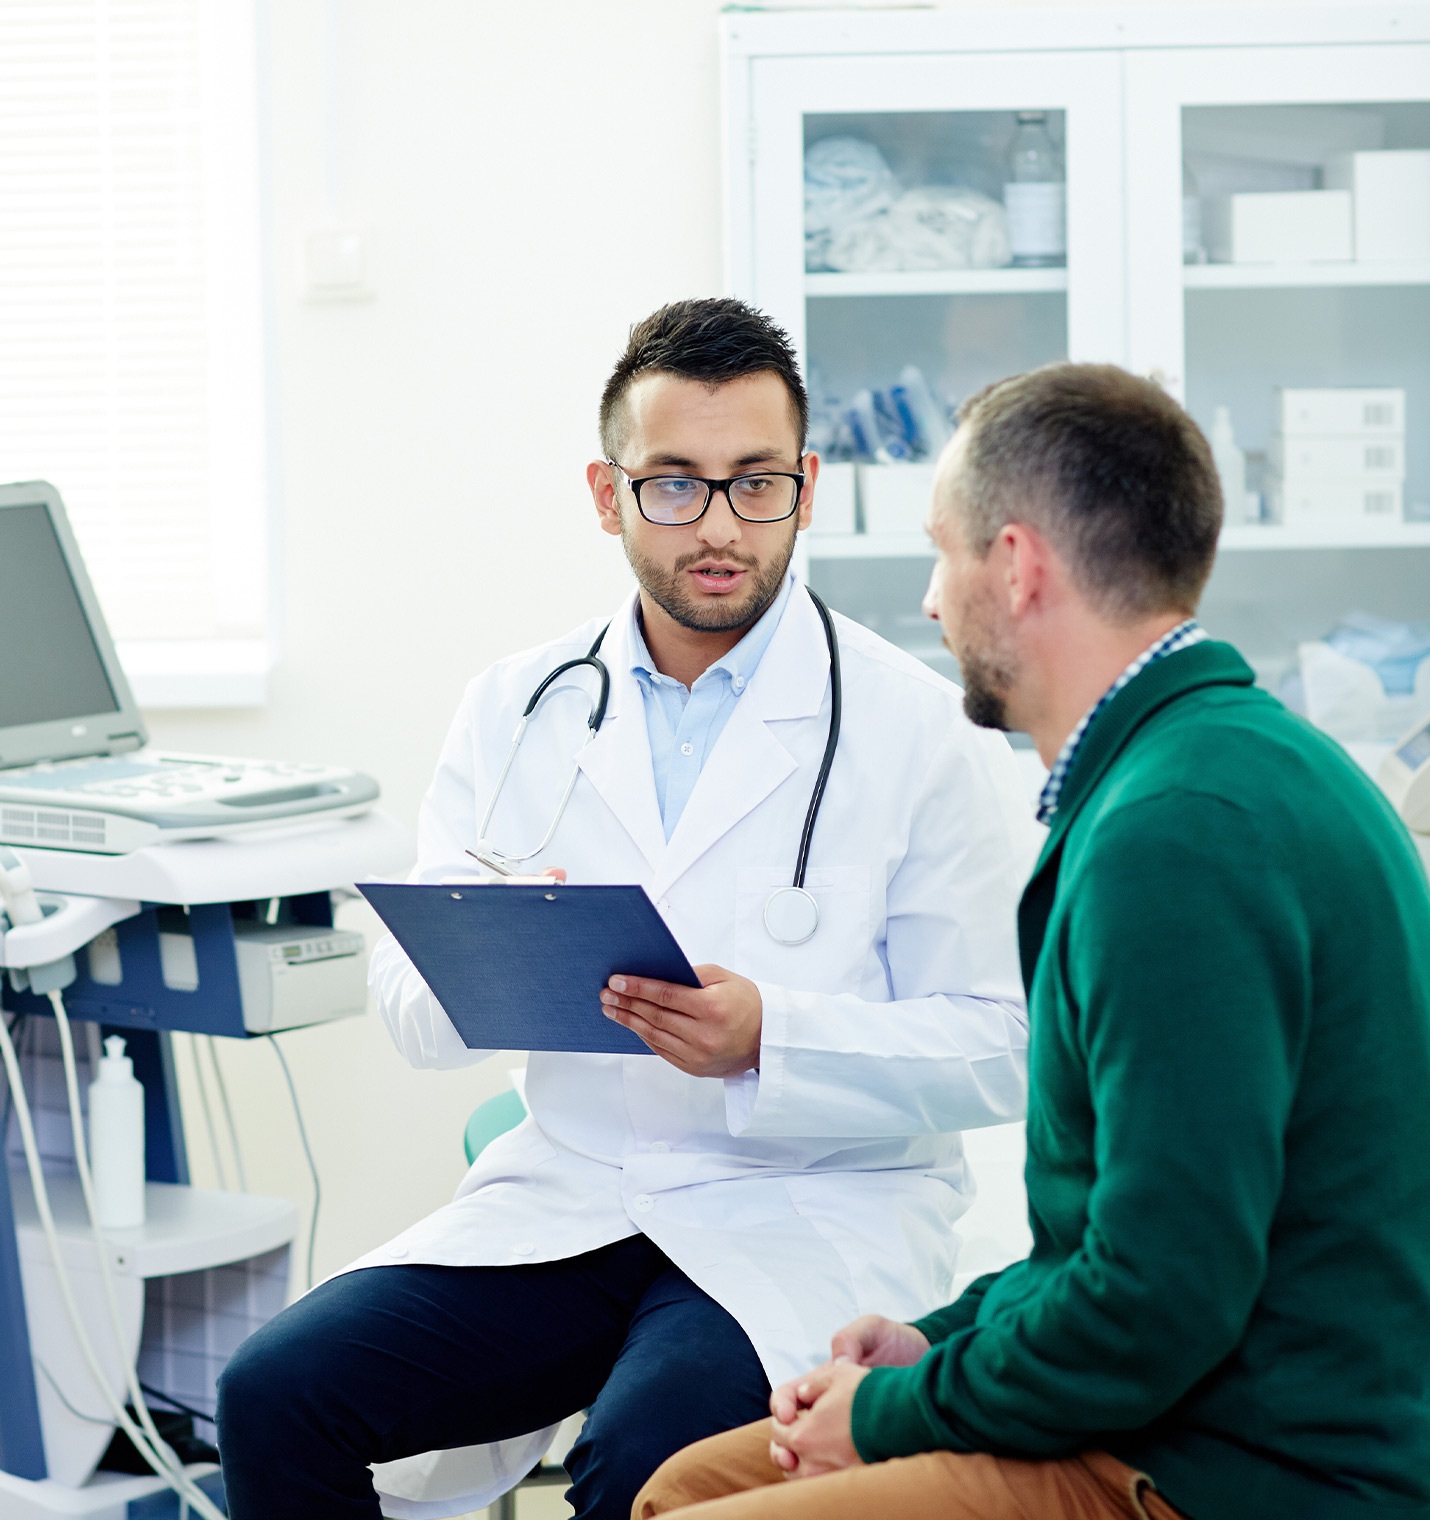 Ein Mann mit einem Kittel und Stethoskop um den Hals sitzt mit einem Patienten im Untersuchungsraum. Dabei hält er ein Klemmbrett in der Hand.